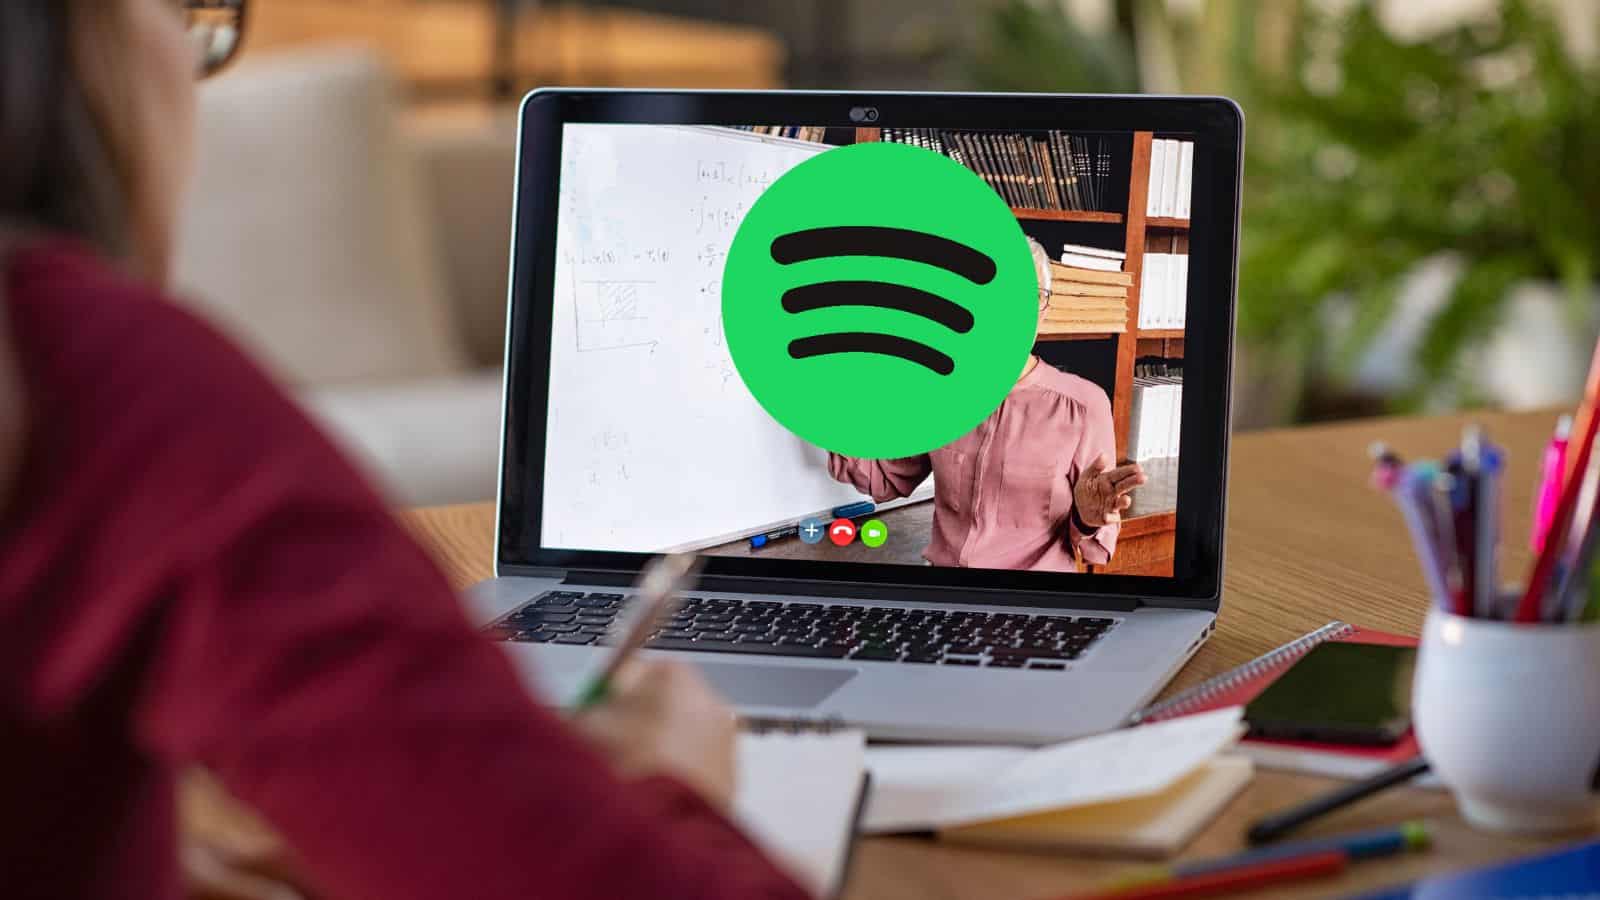 Spotify: come accedere alle video-lezioni sulla piattaforma